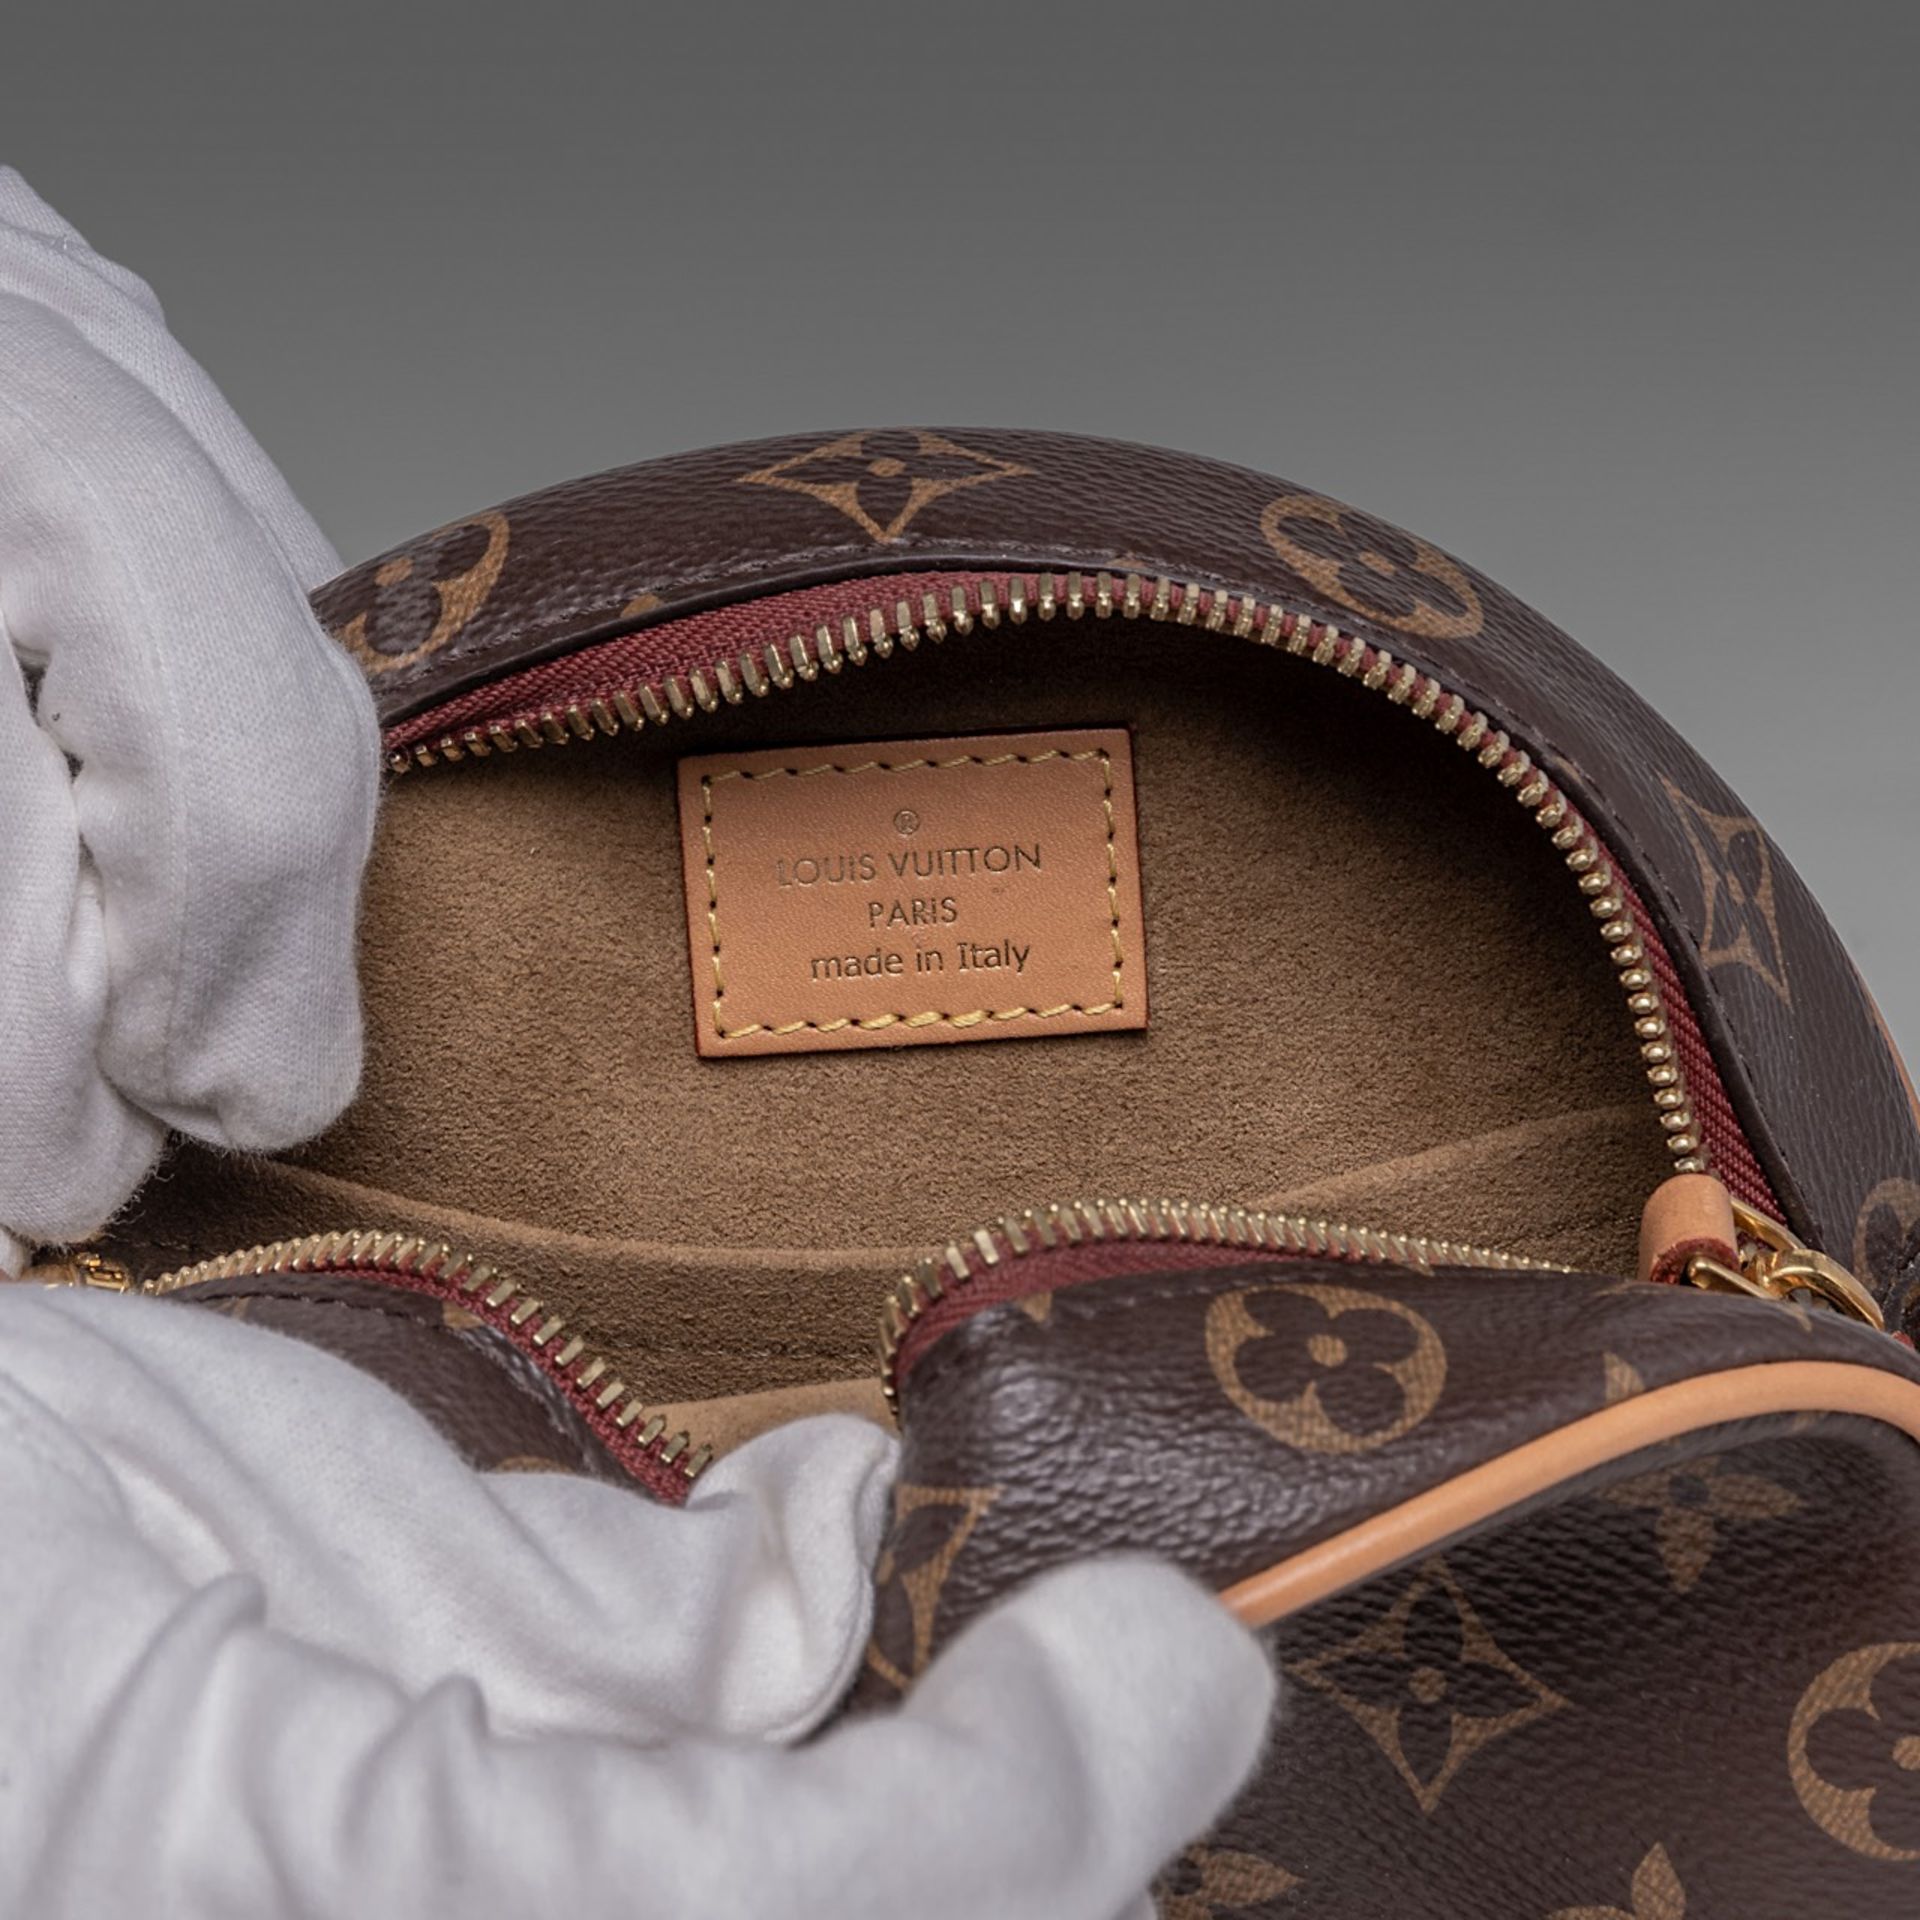 A Louis Vuitton monogram boite chapeau handbag, H 16 cm - Image 9 of 9